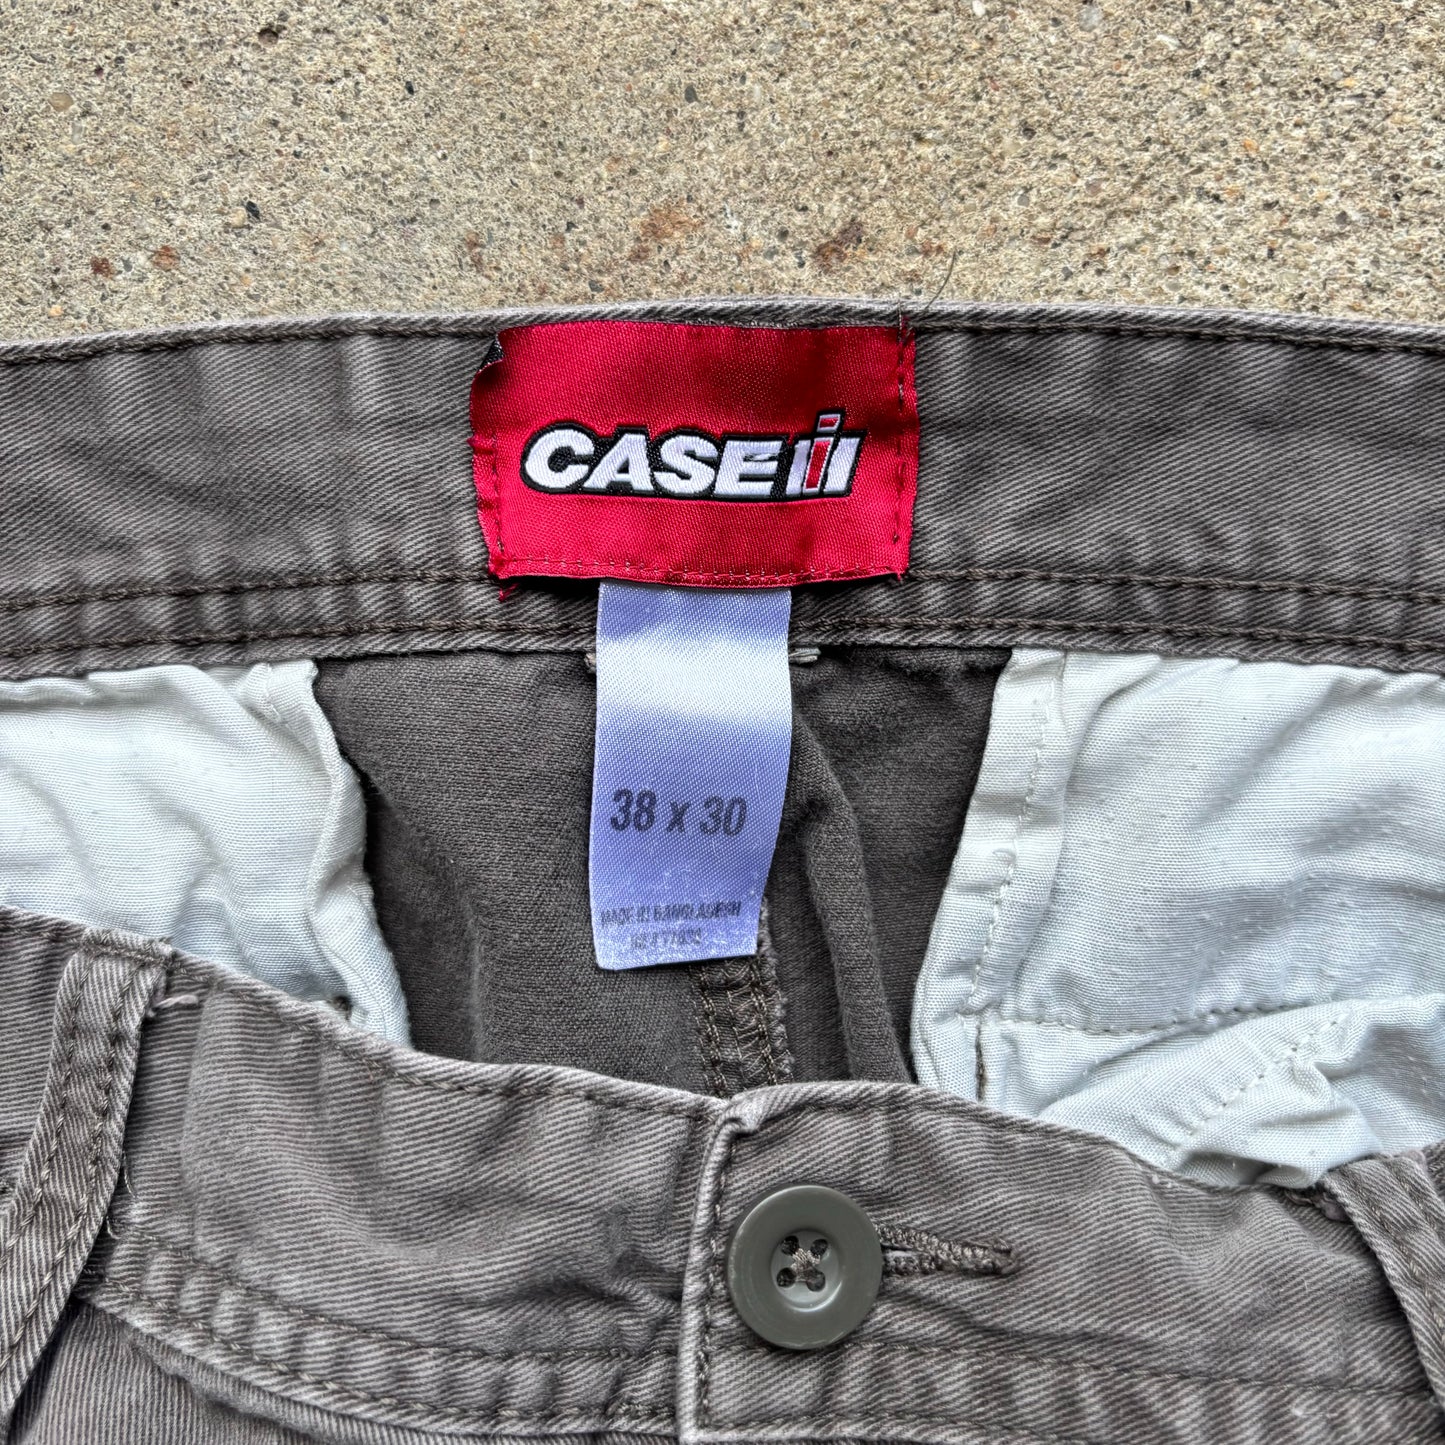 Case IH Baggy Brown Cargo Pants [38 x 30]